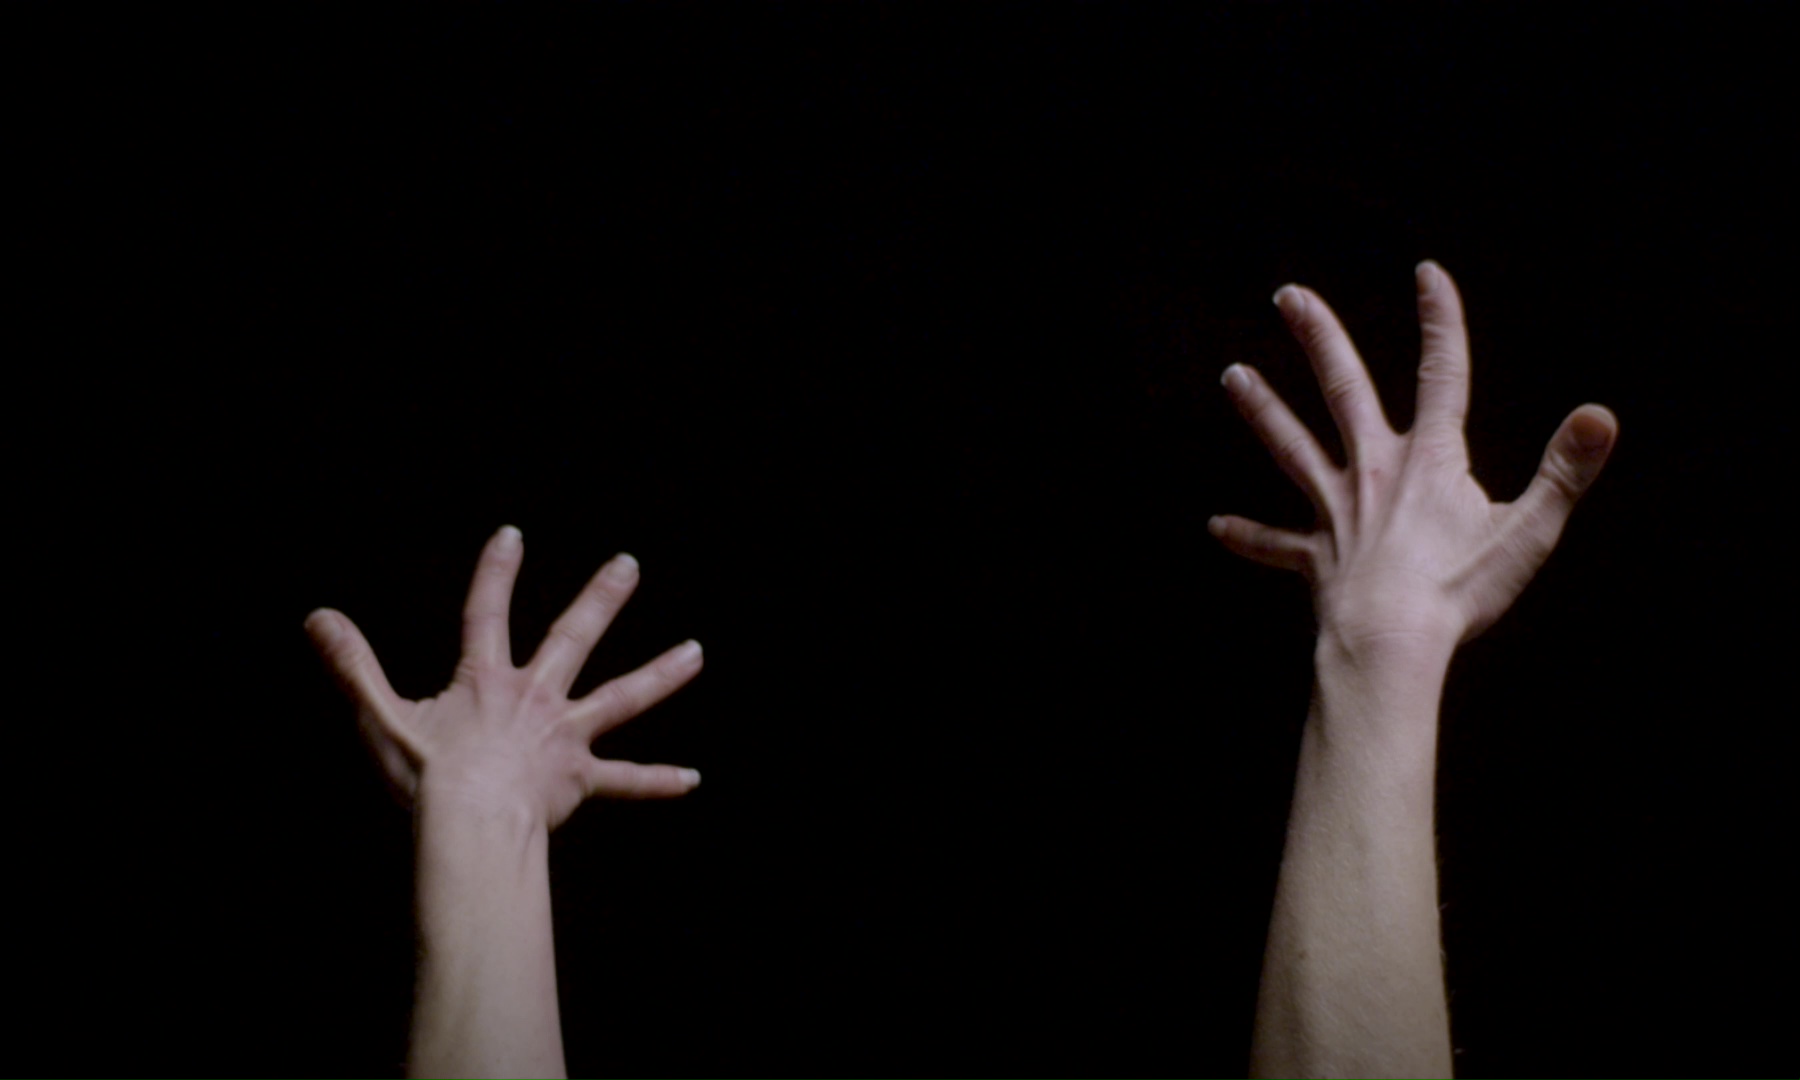 Film still showing Aline Costa's extended hands